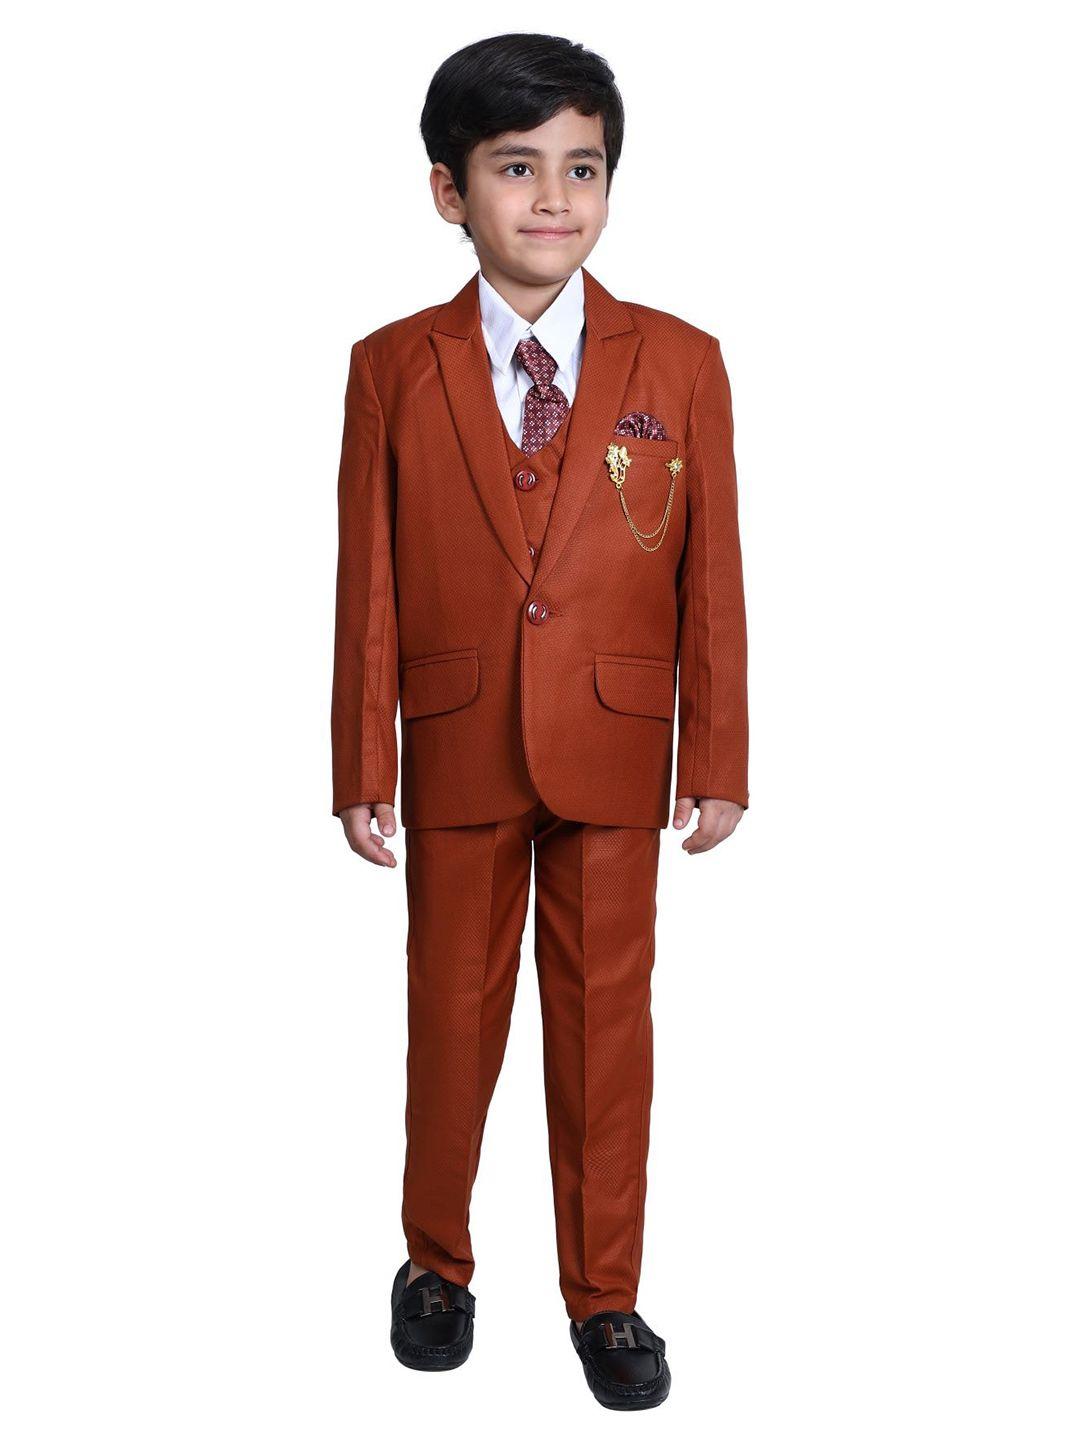 dkgf fashion boys 5-piece suit